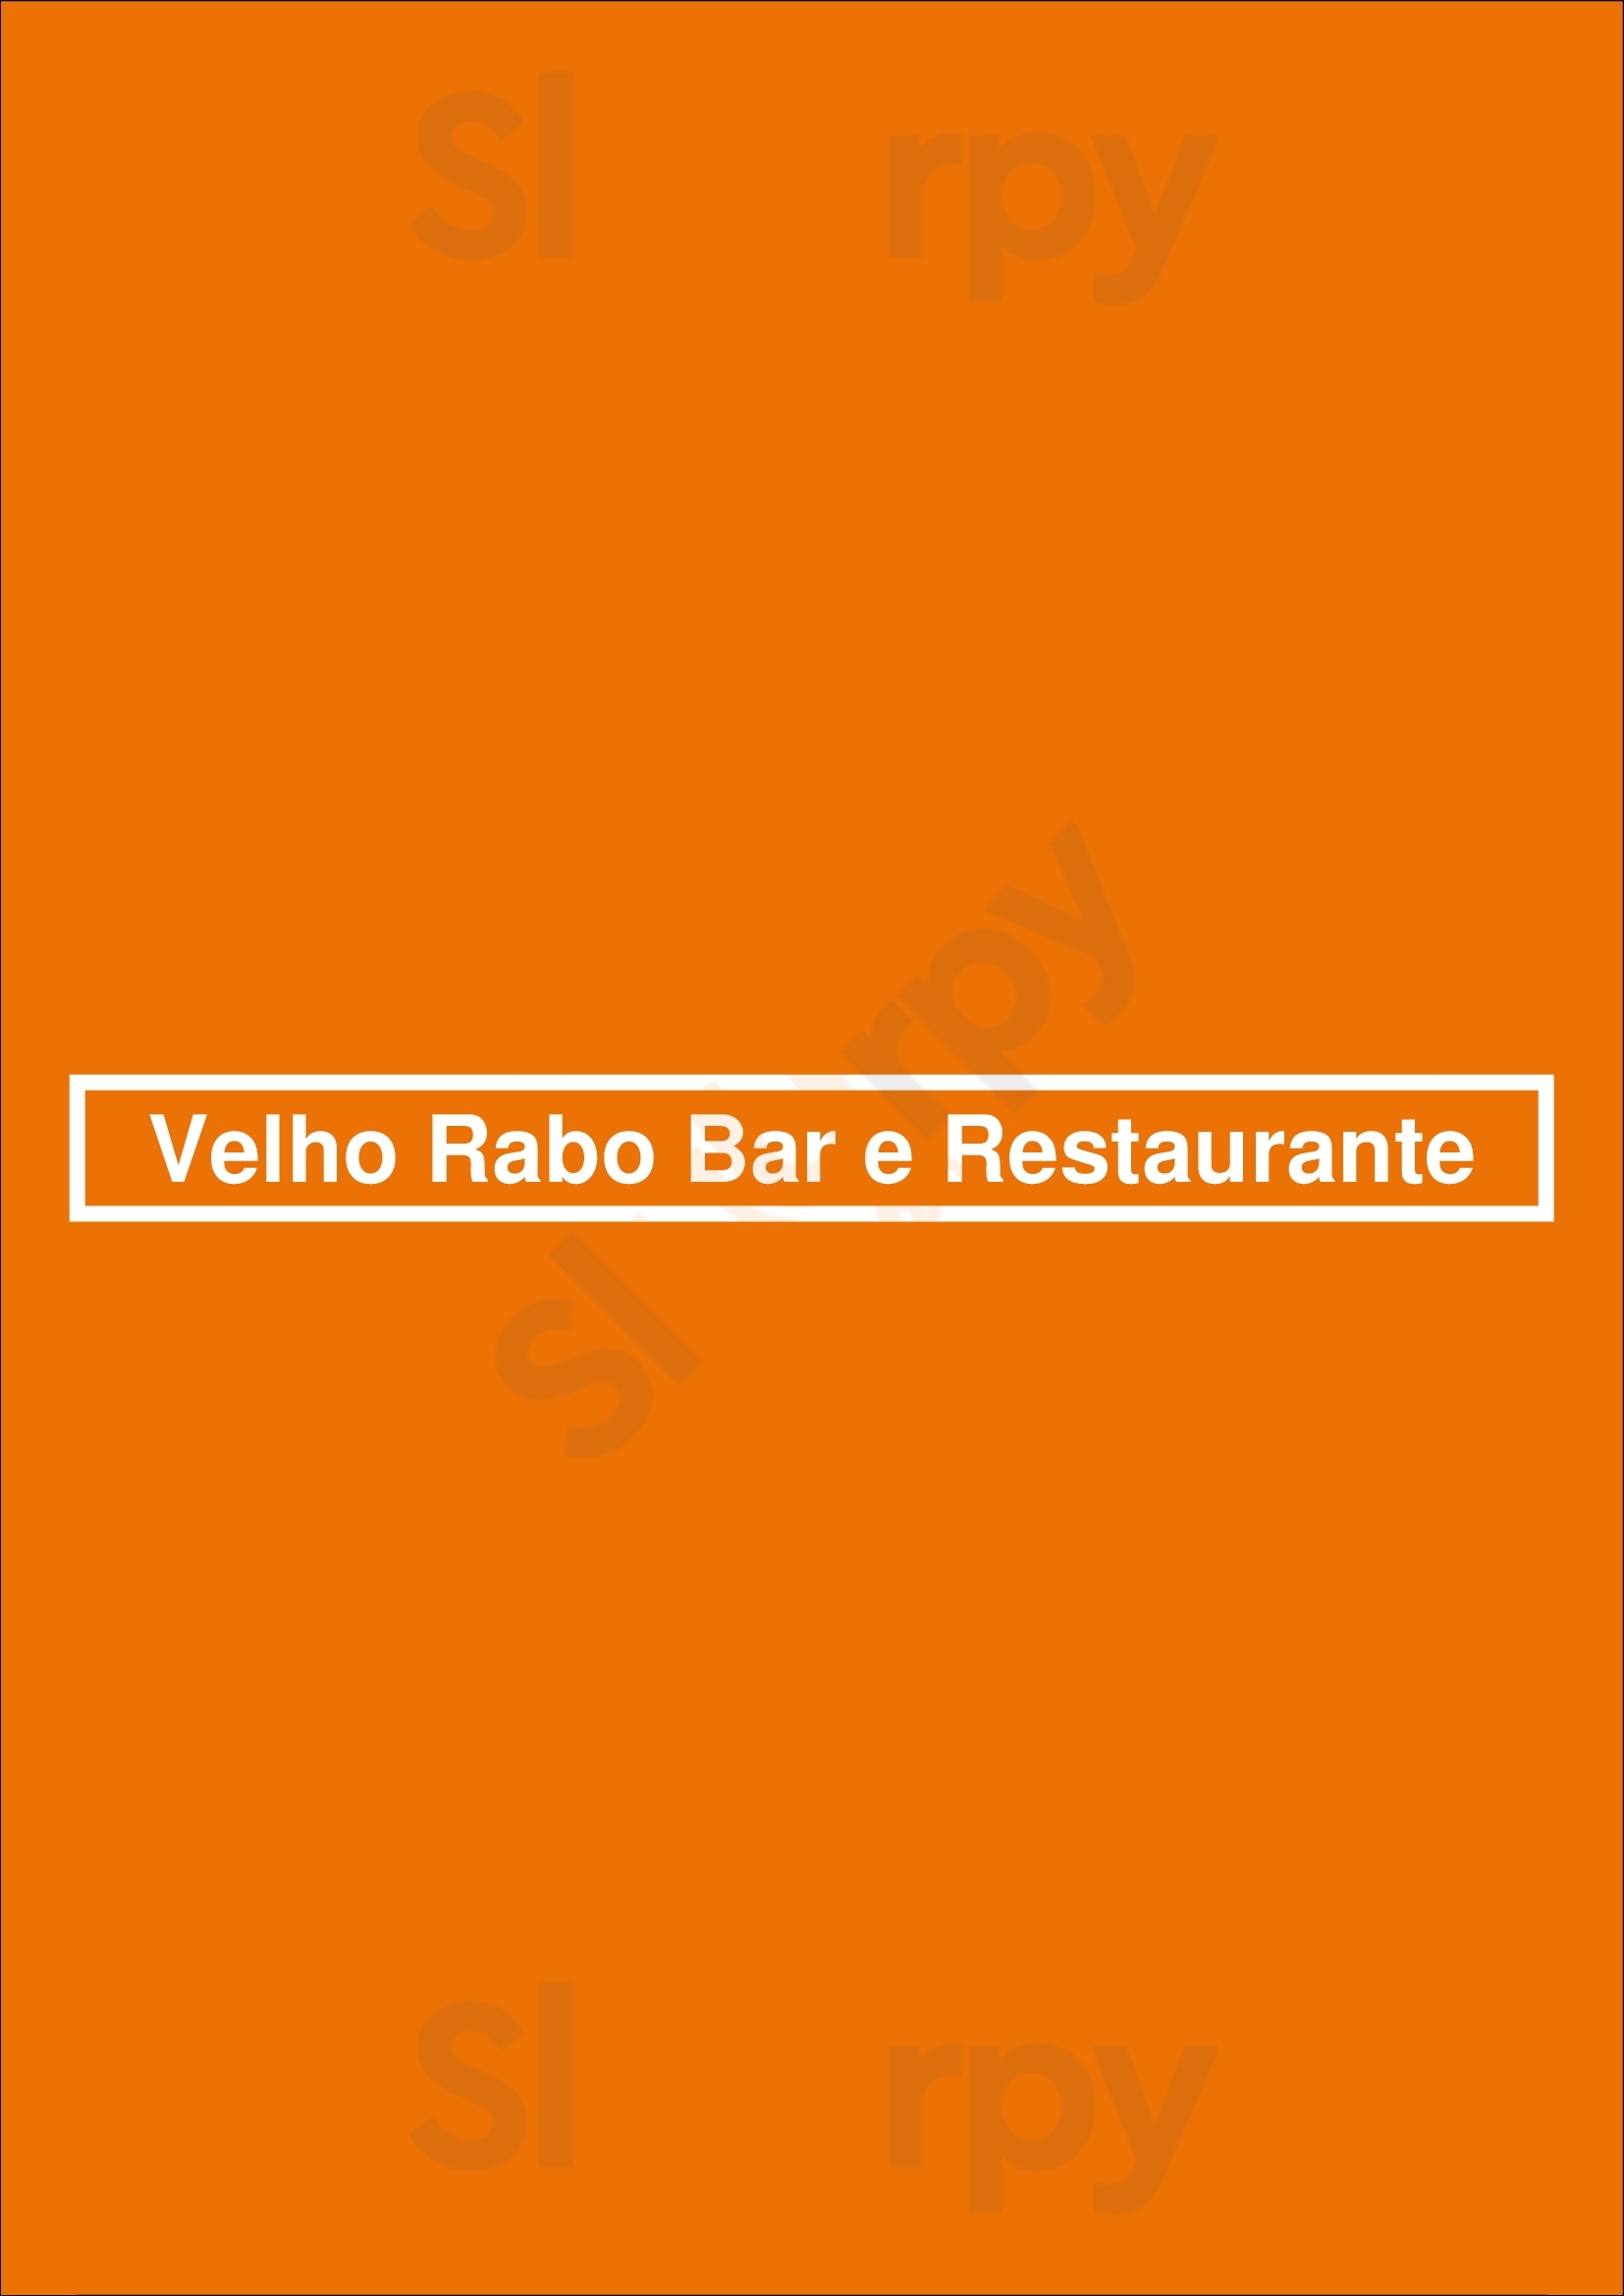 Velho Rabo Bar E Restaurante São Paulo Menu - 1